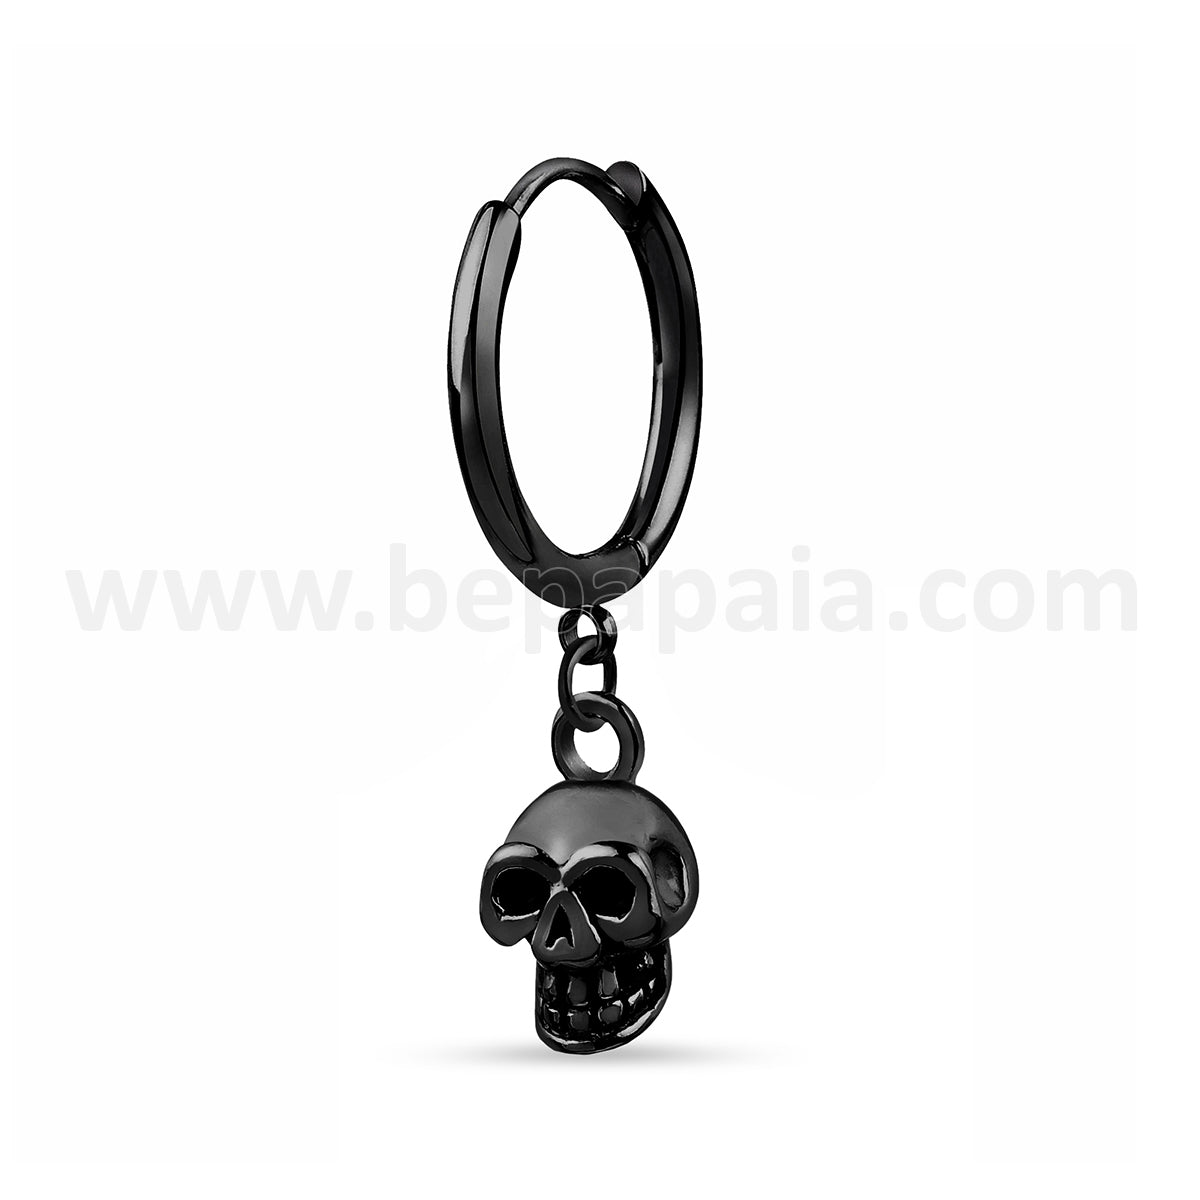 Steel hoop earring with skull